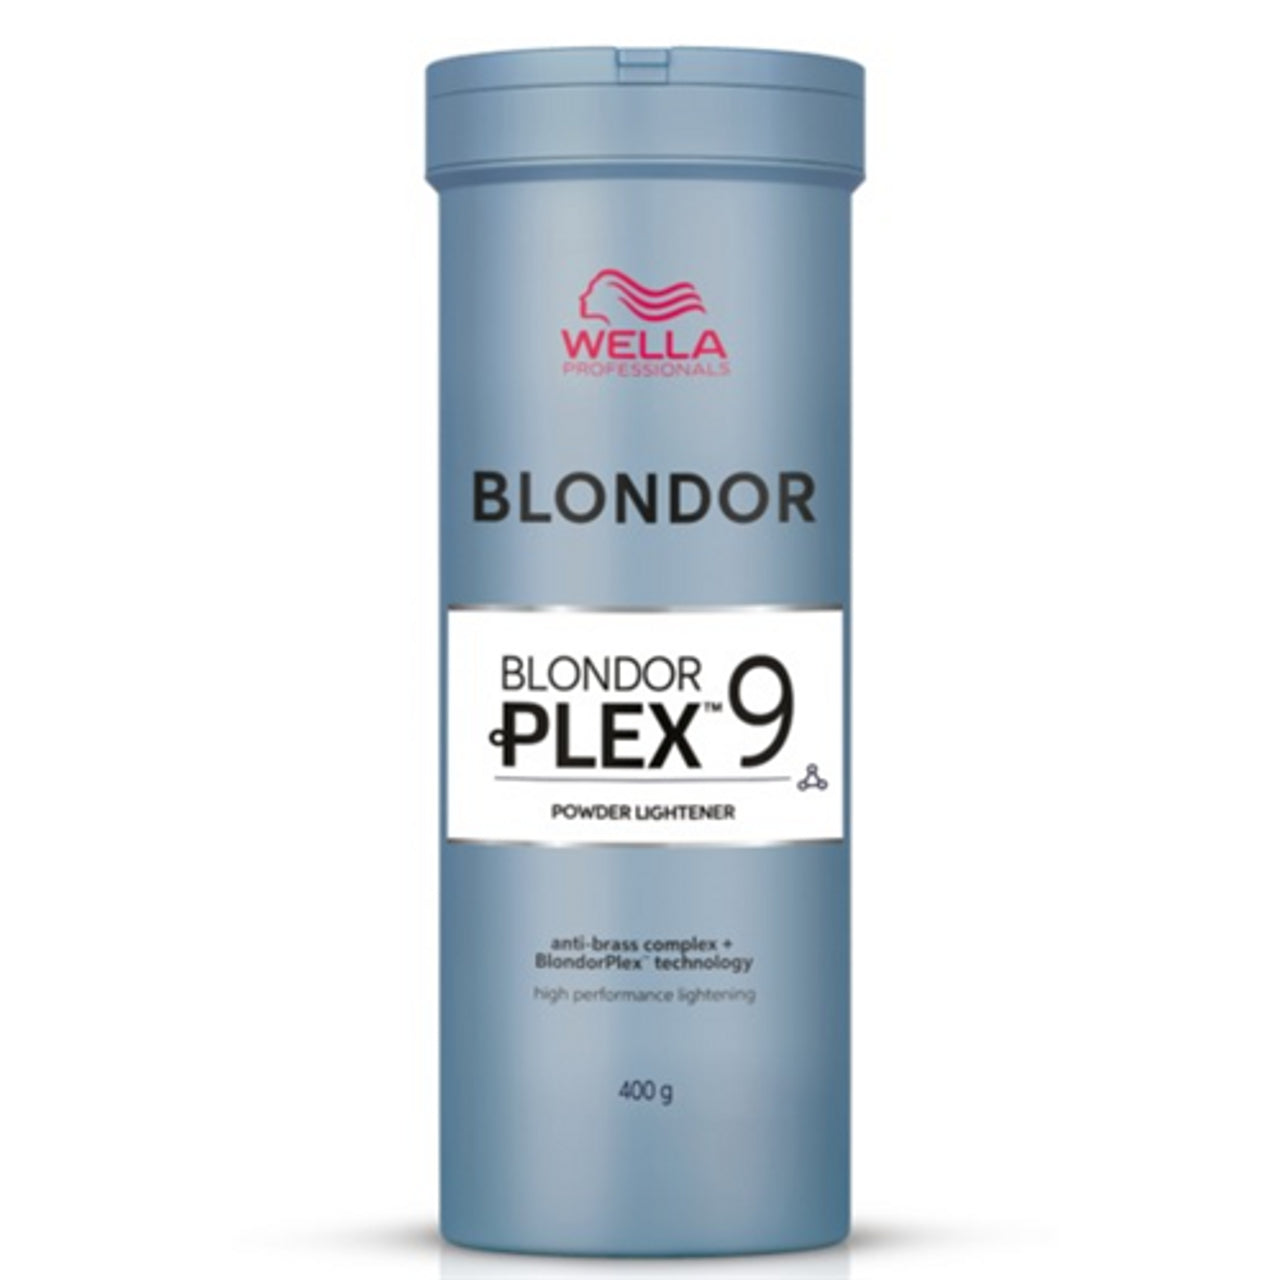 Wella Blondorplex Bleach 400g